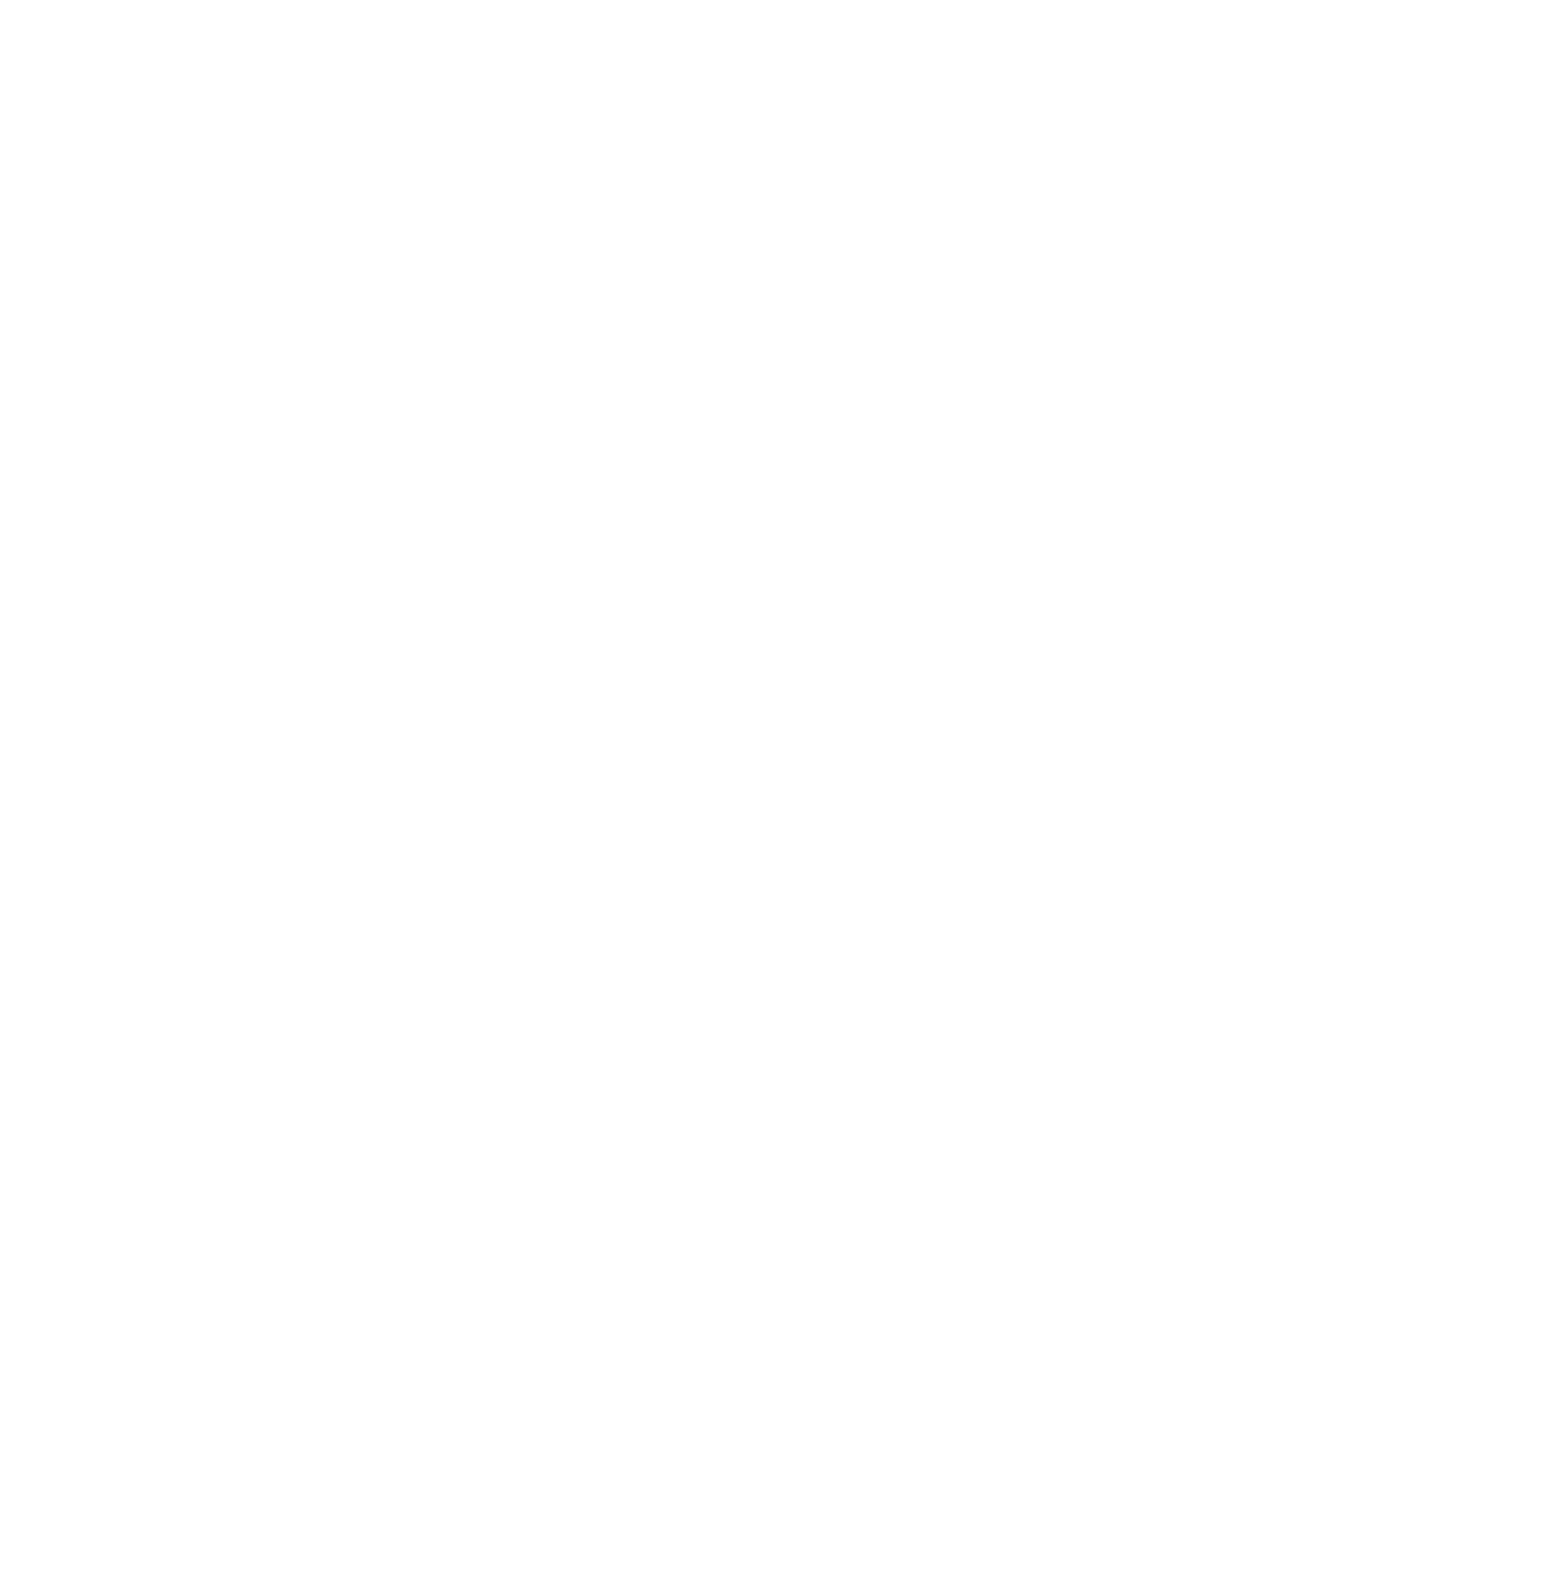 Hexatronic Group AB logo pour fonds sombres (PNG transparent)